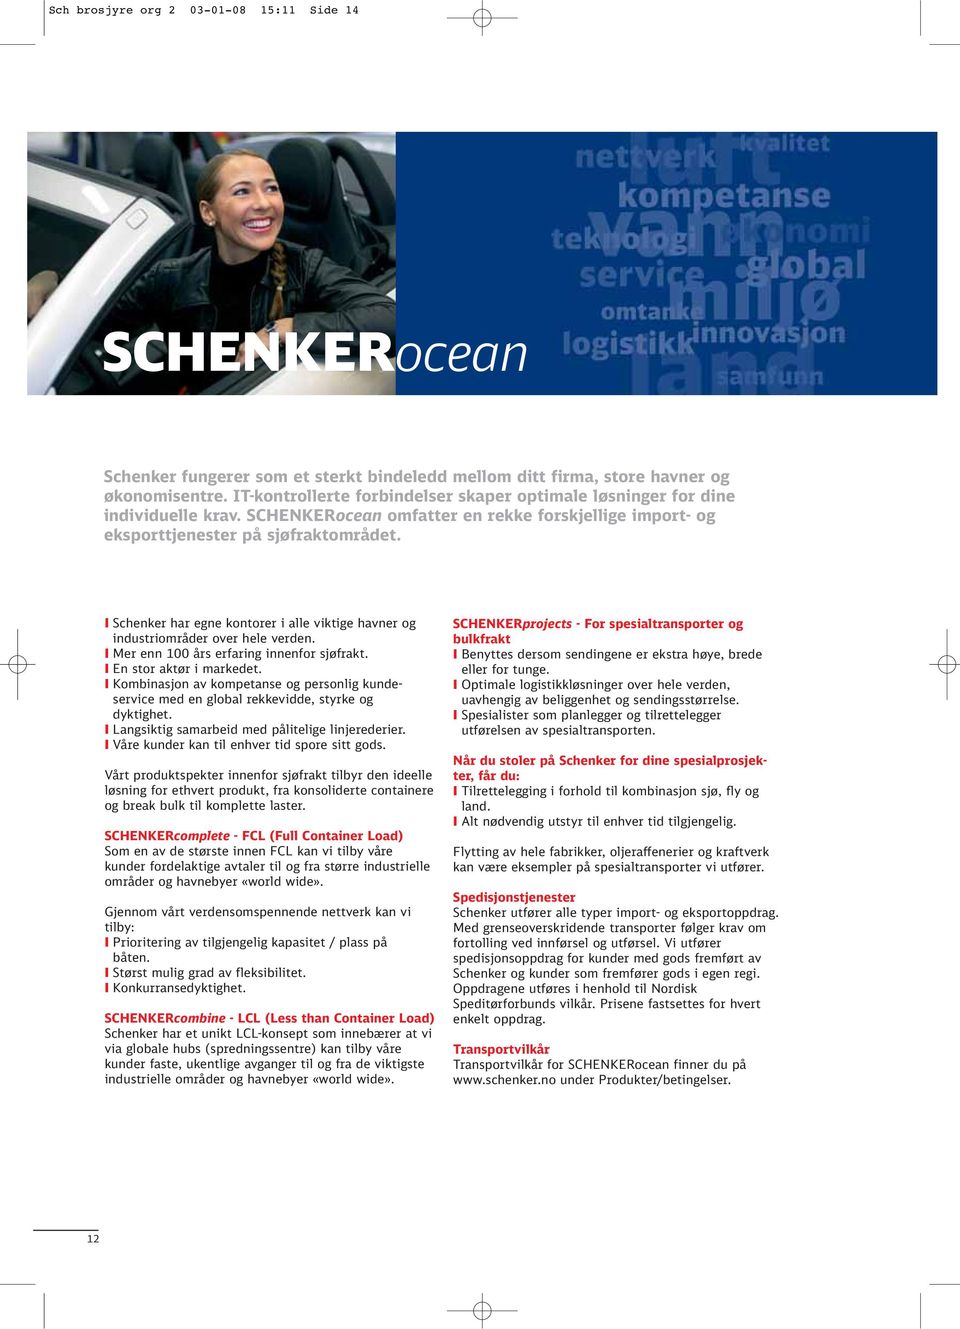 I Schenker har egne kontorer i alle viktige havner og industriområder over hele verden. I Mer enn 100 års erfaring innenfor sjøfrakt. I En stor aktør i markedet.